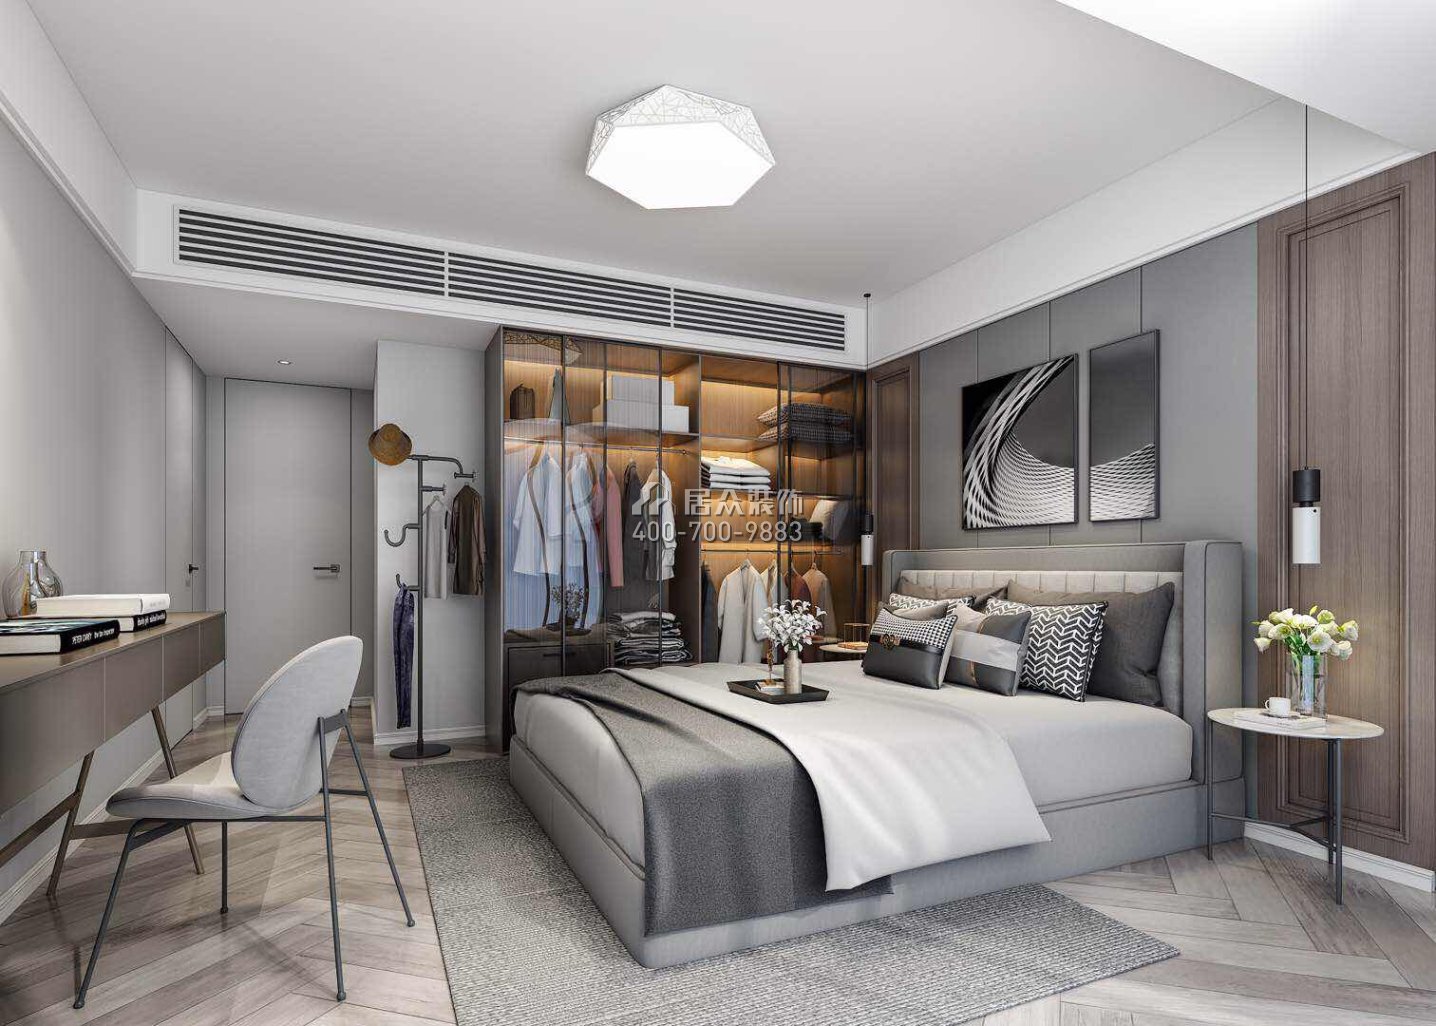 星河明居150平方米現代簡約風格平層戶型臥室裝修效果圖